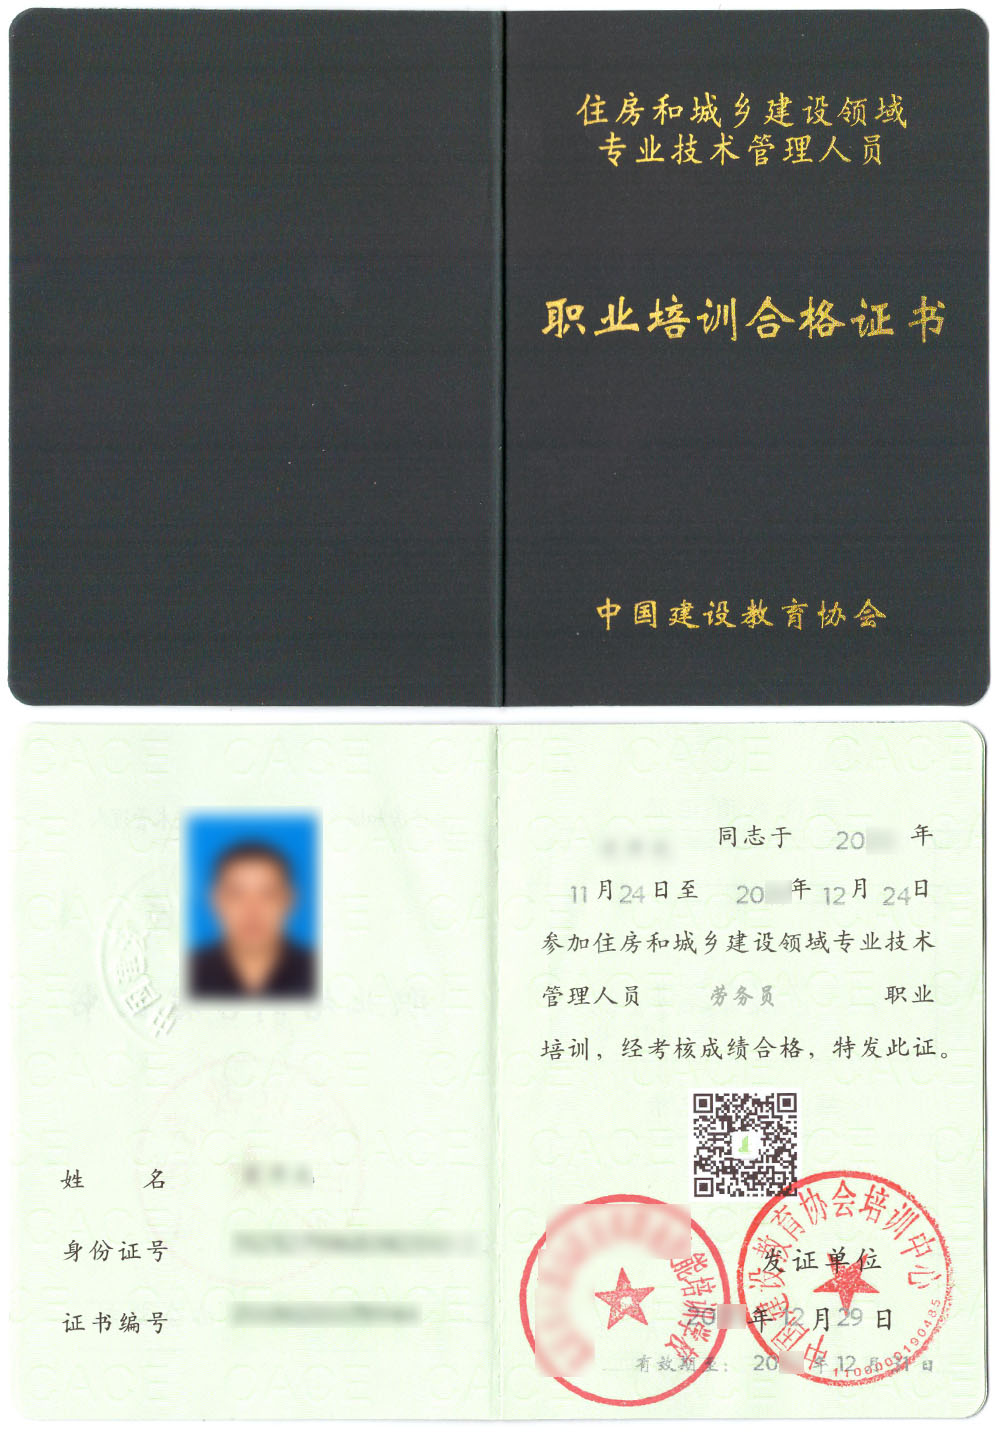 中国建设教育协会 住房和城乡建设领域专业技术管理人员职业培训合格证书 劳务员证证书样本